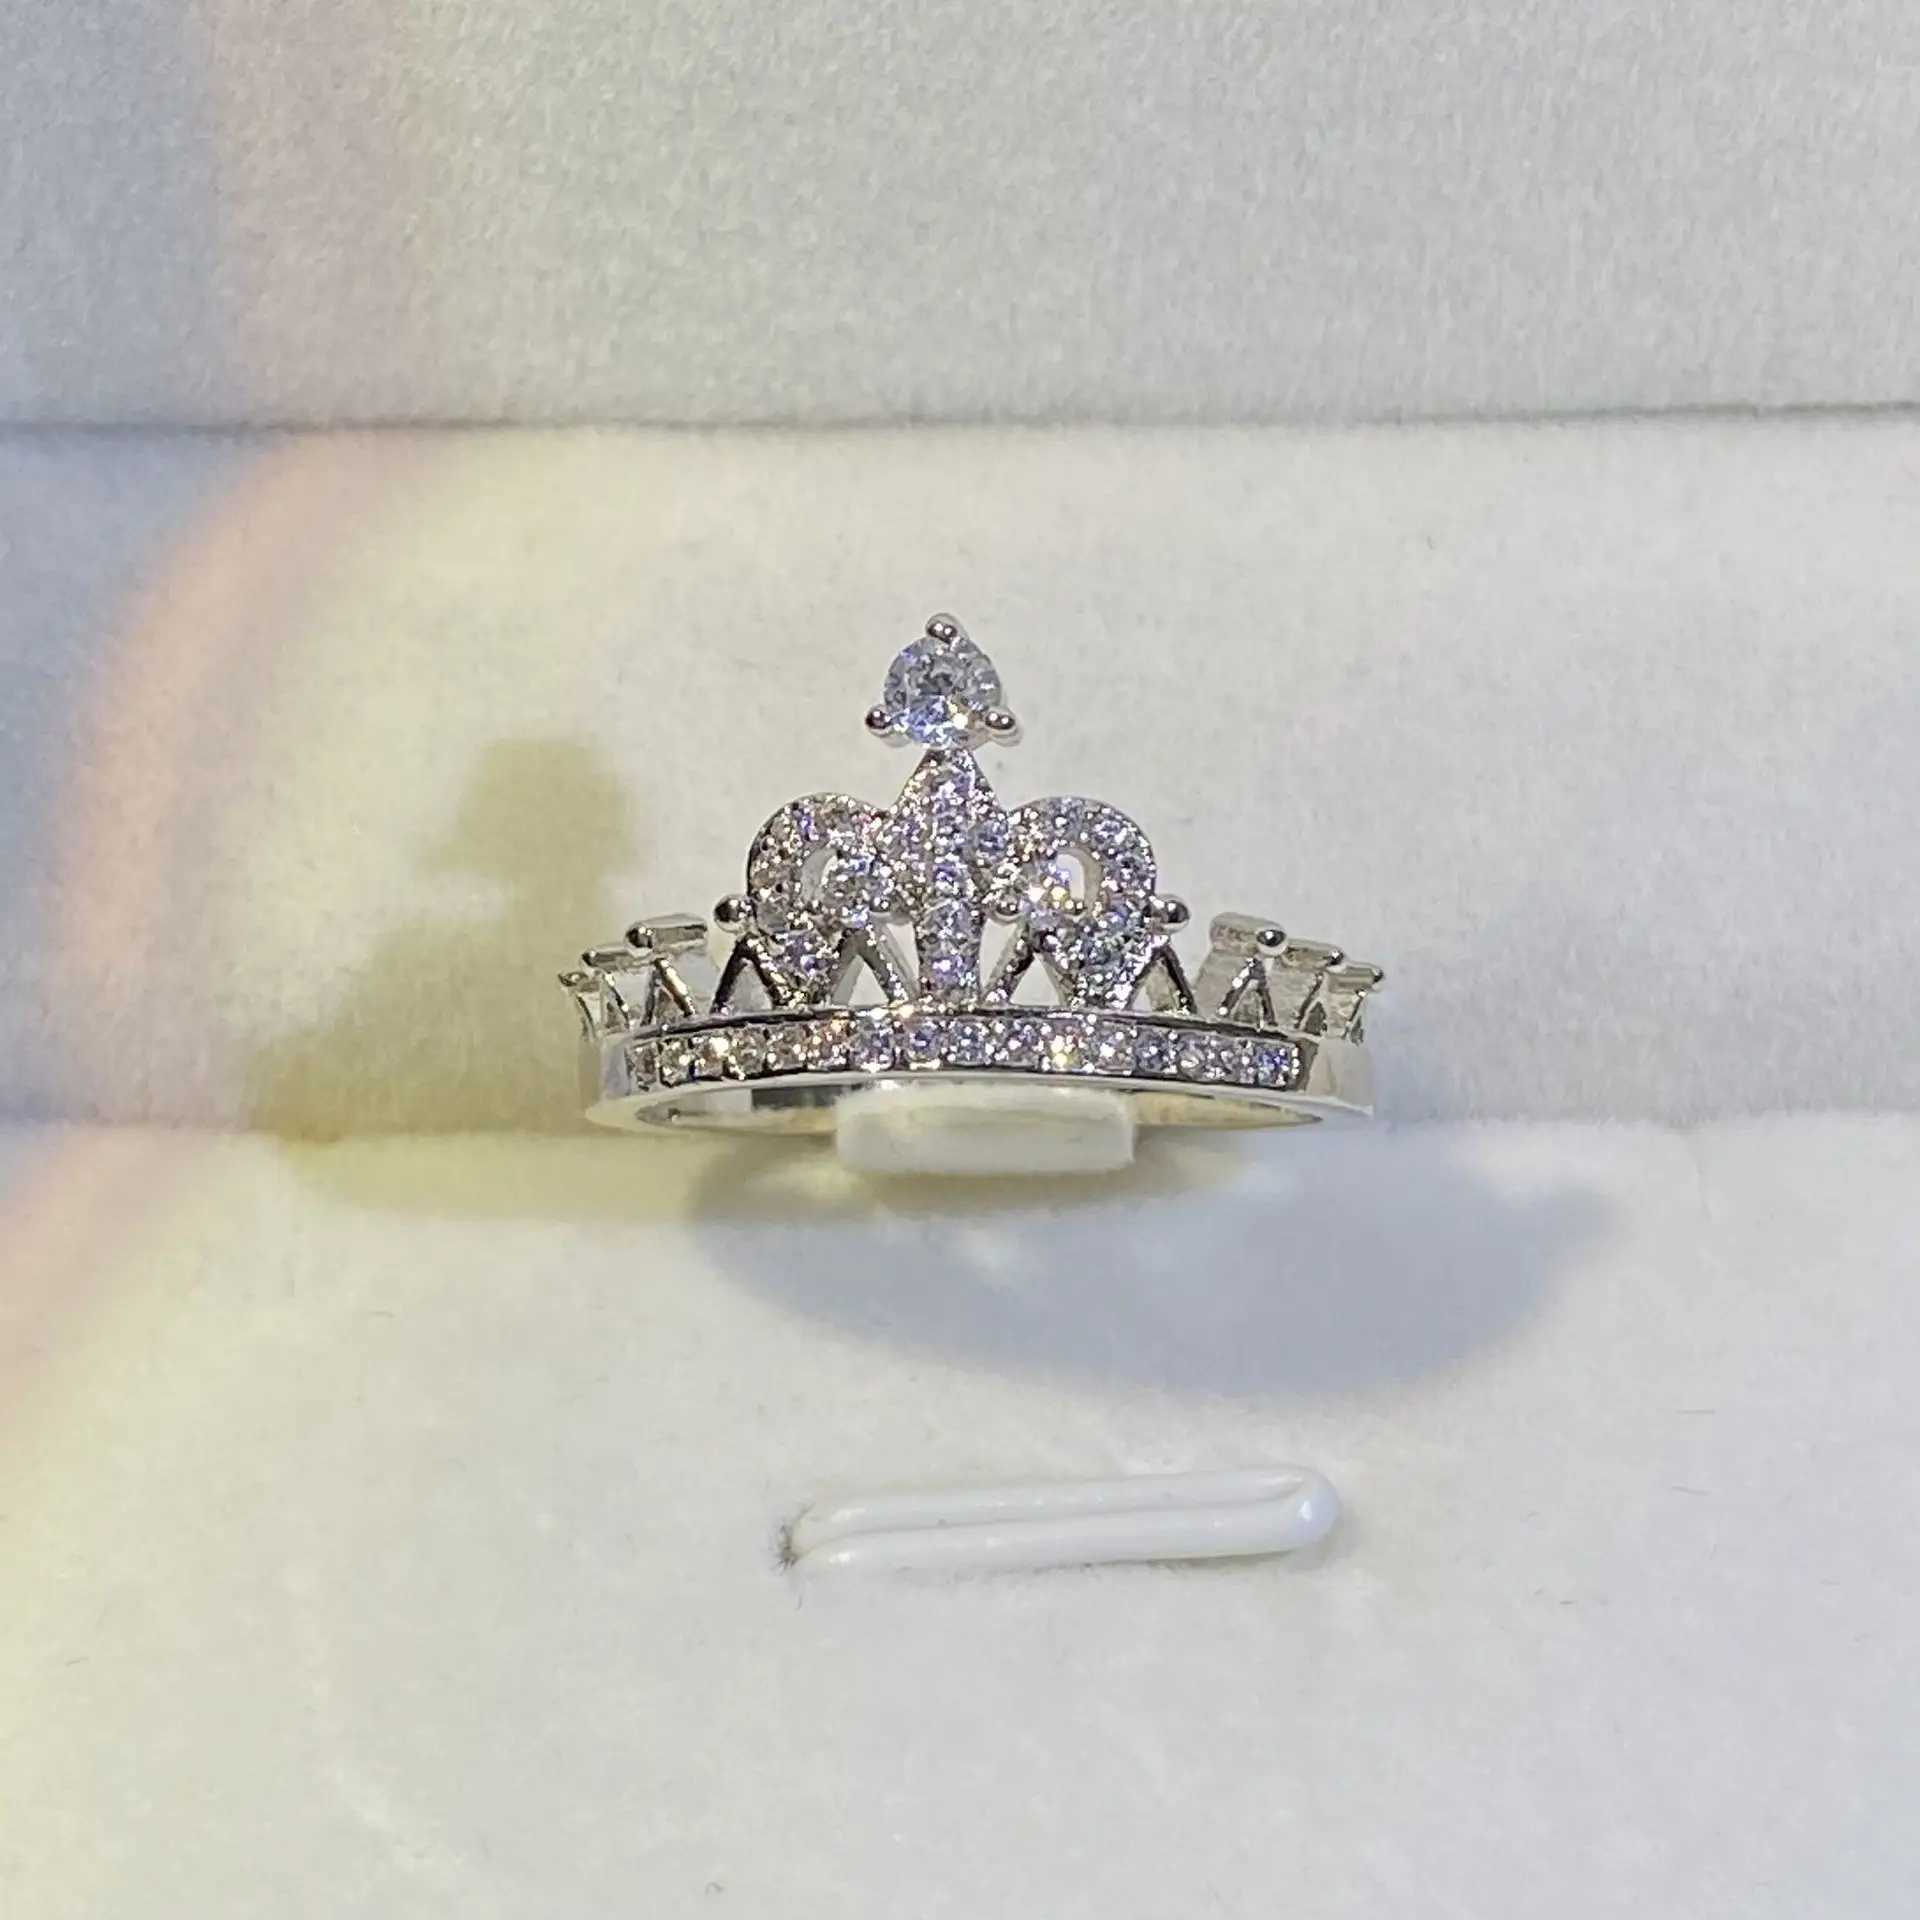 Pierścień Solitaire Bling romantyczna księżniczka korona cyrkonia biały złoty pierścionek żeńska parą zaręczynową biżuterię mody prezent D240419